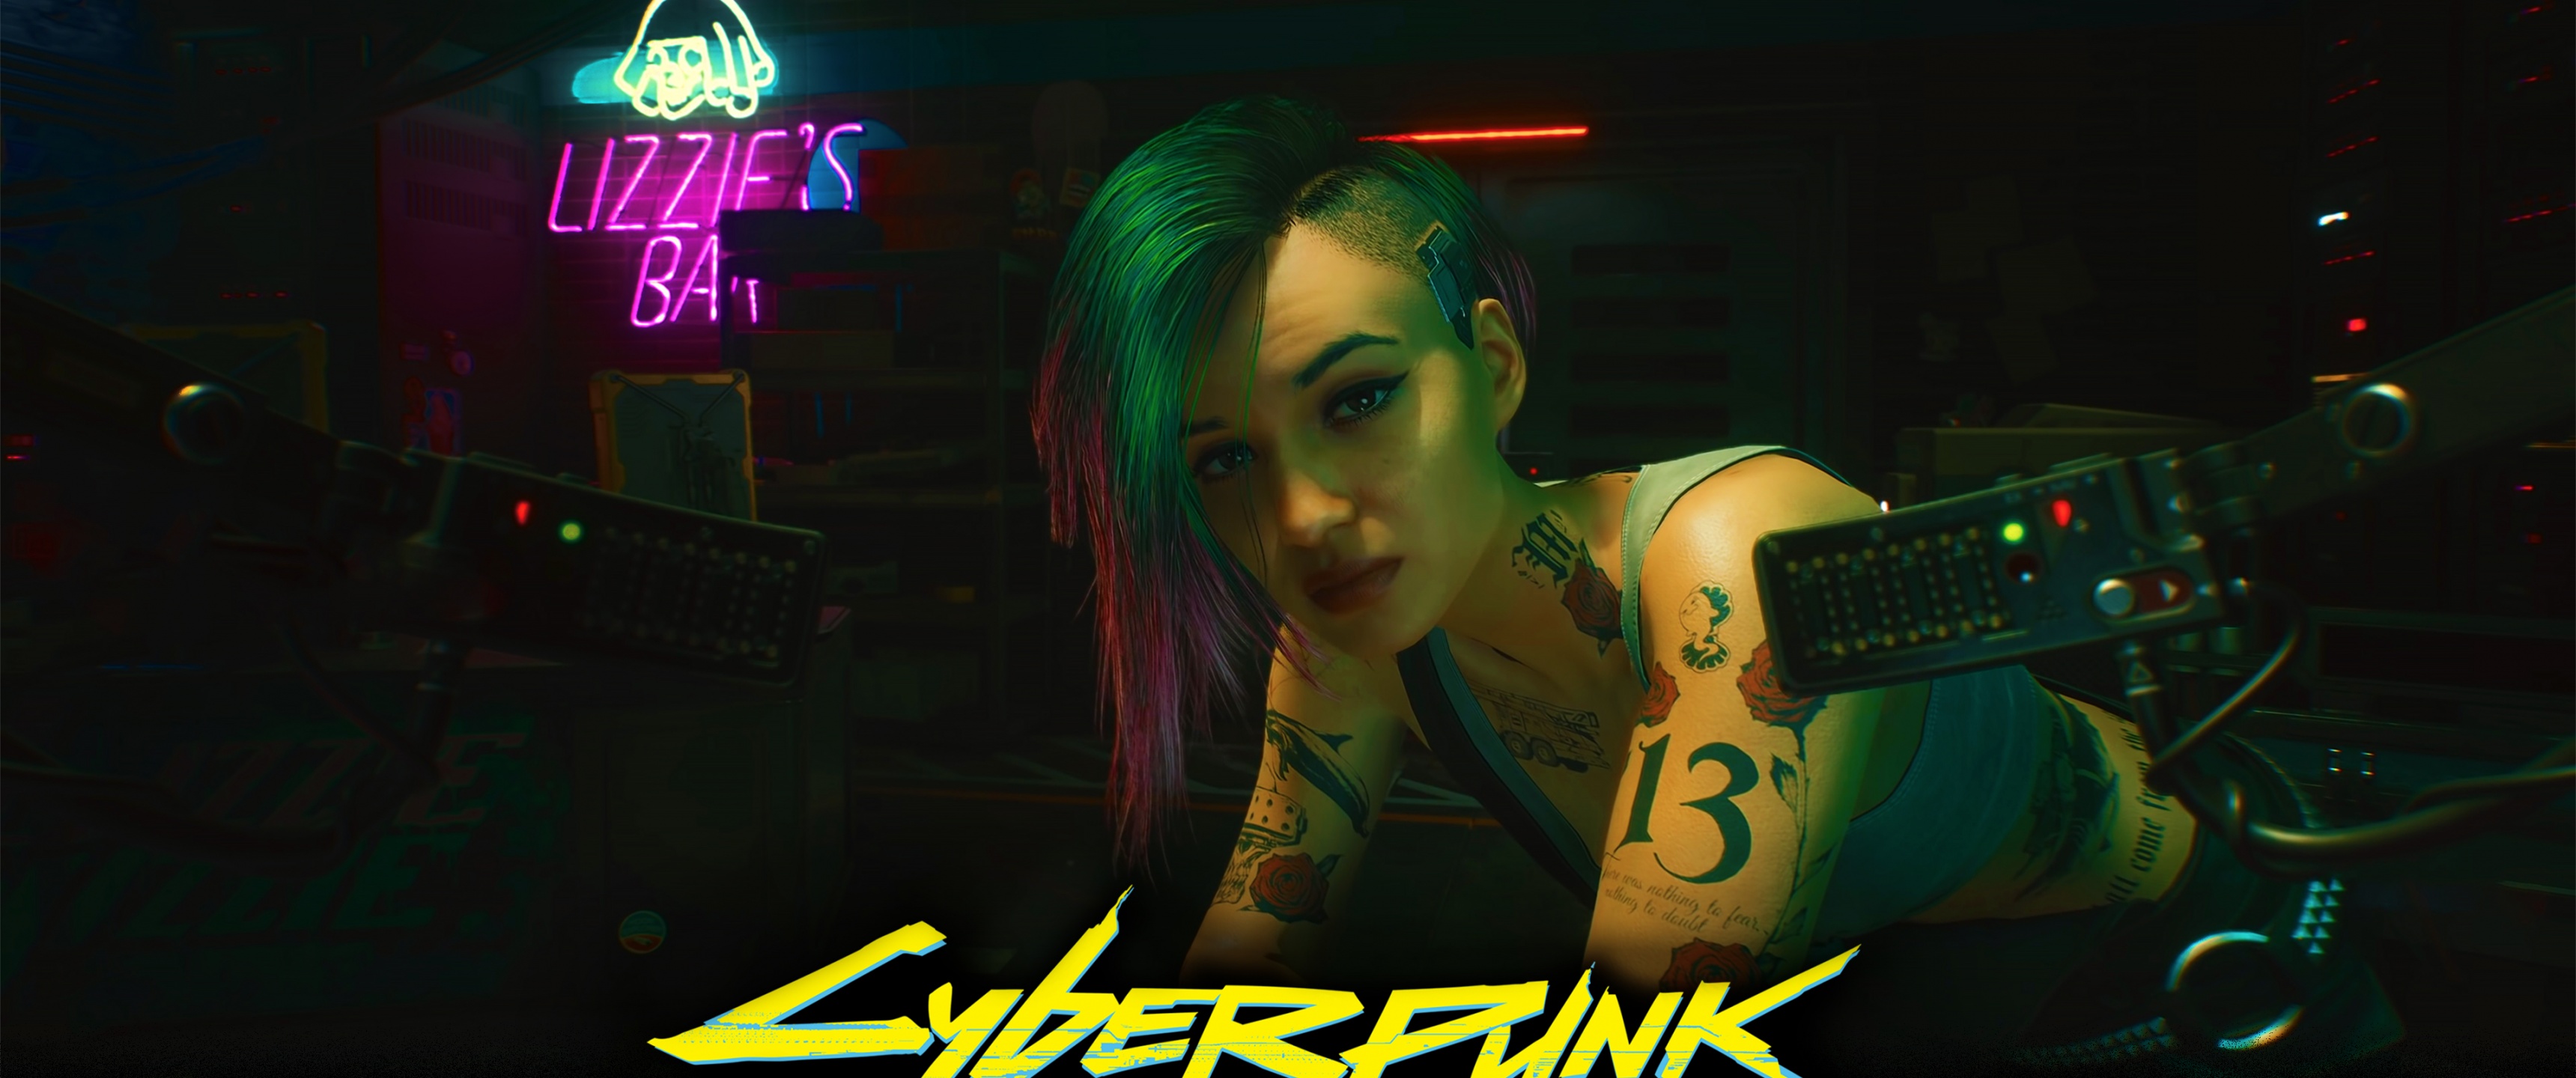 Download wallpaper: Cyberpunk 2077 gameplay 1366x768